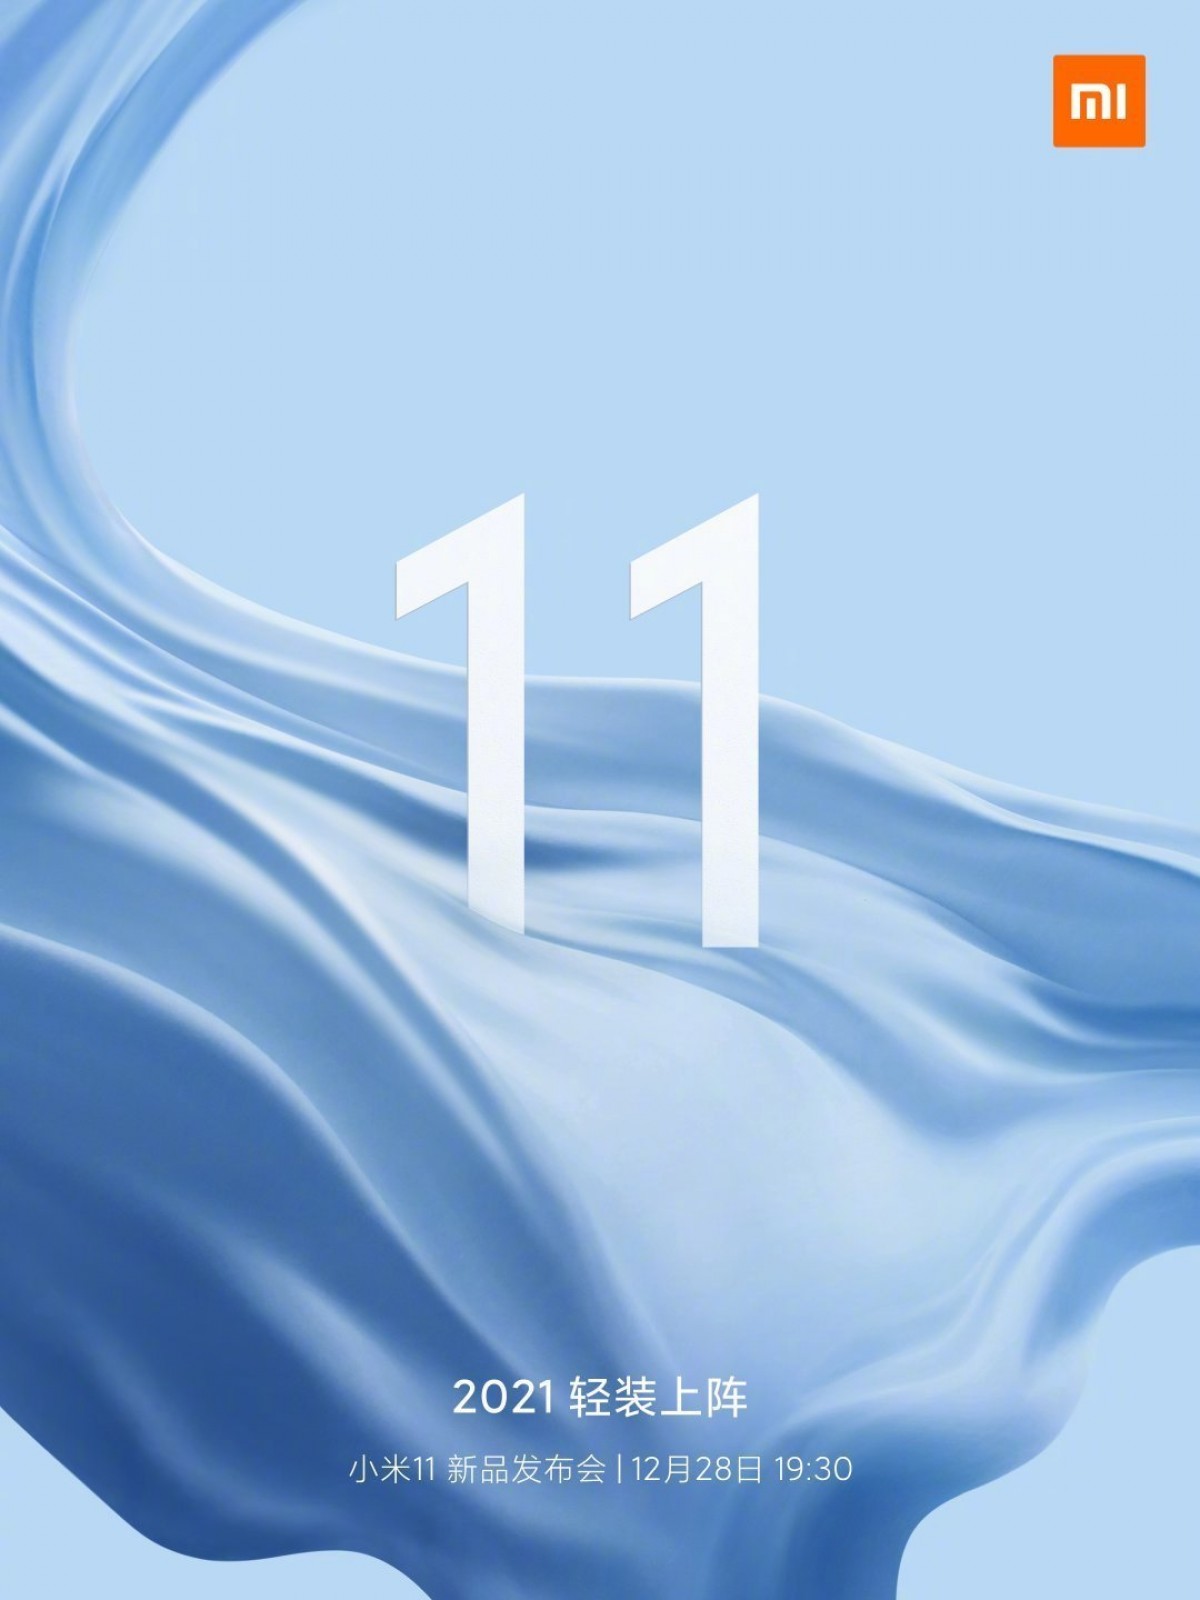 Hivatalos: öt nap múlva érkezik a Xiaomi Mi 11